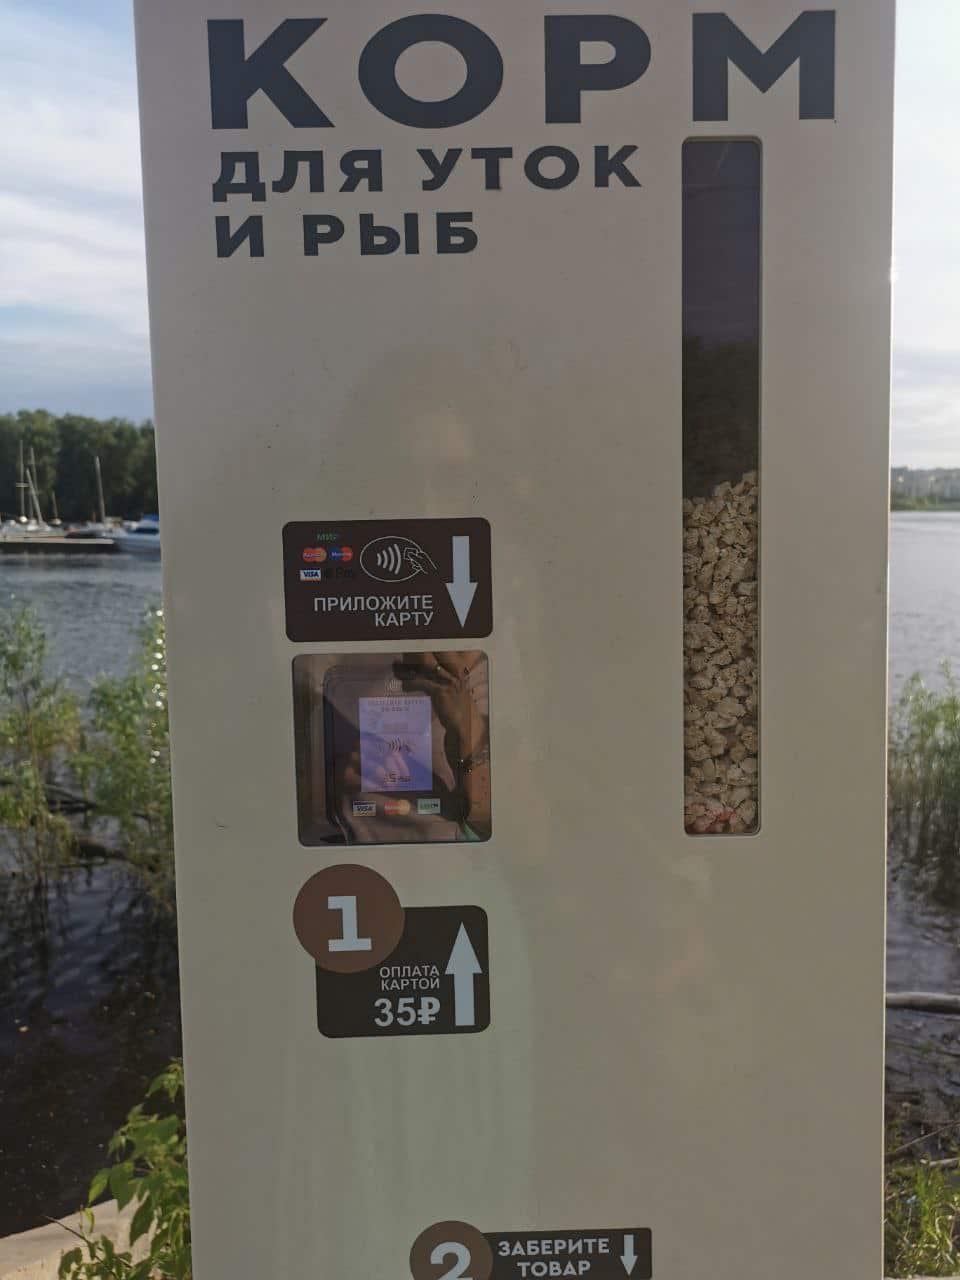 В Омске в парке появились автоматы с кормом для уток и рыб